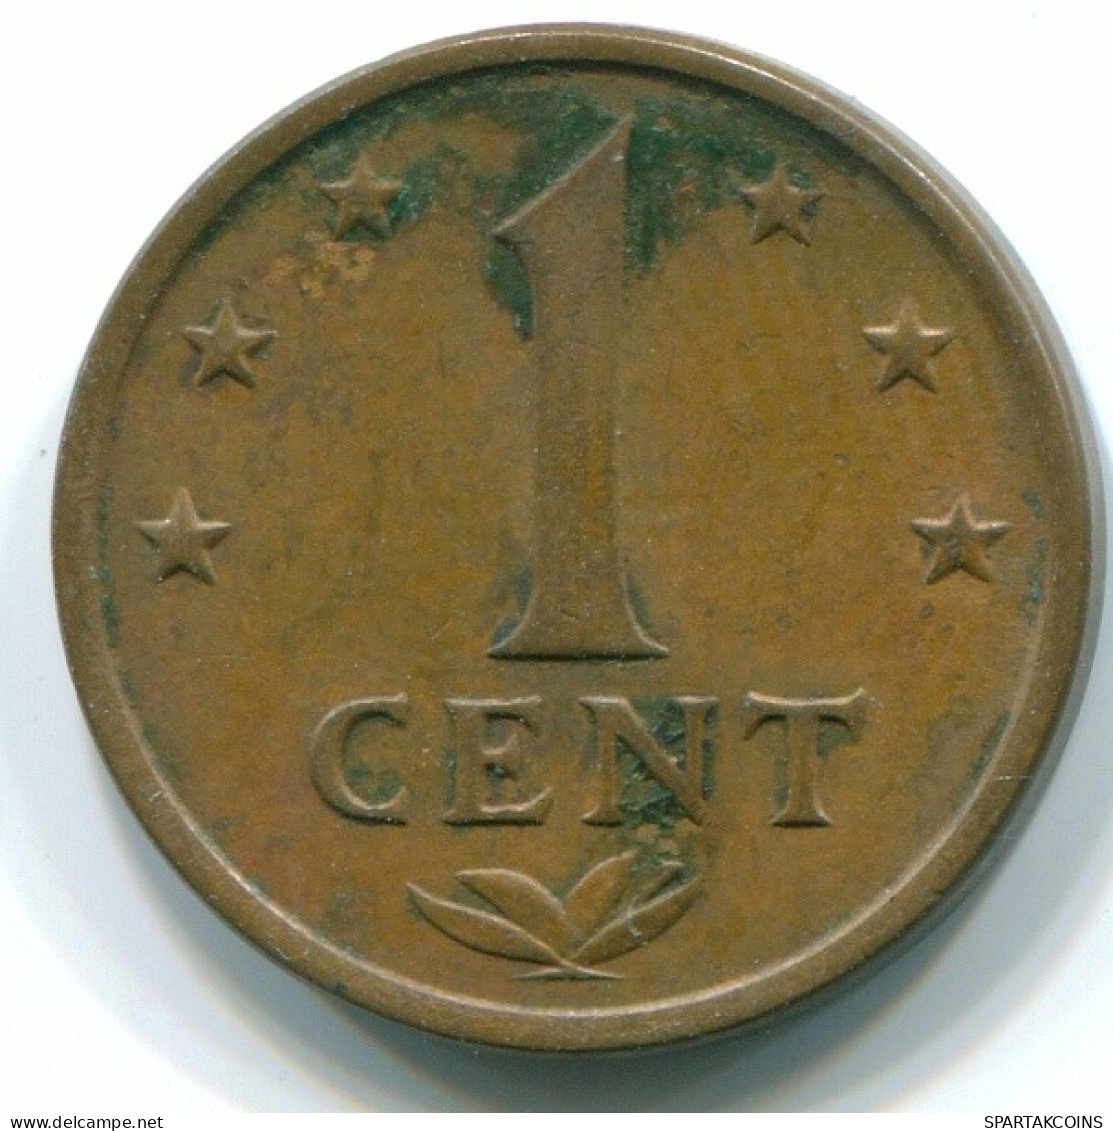 1 CENT 1973 NIEDERLÄNDISCHE ANTILLEN Bronze Koloniale Münze #S10654.D.A - Antillas Neerlandesas